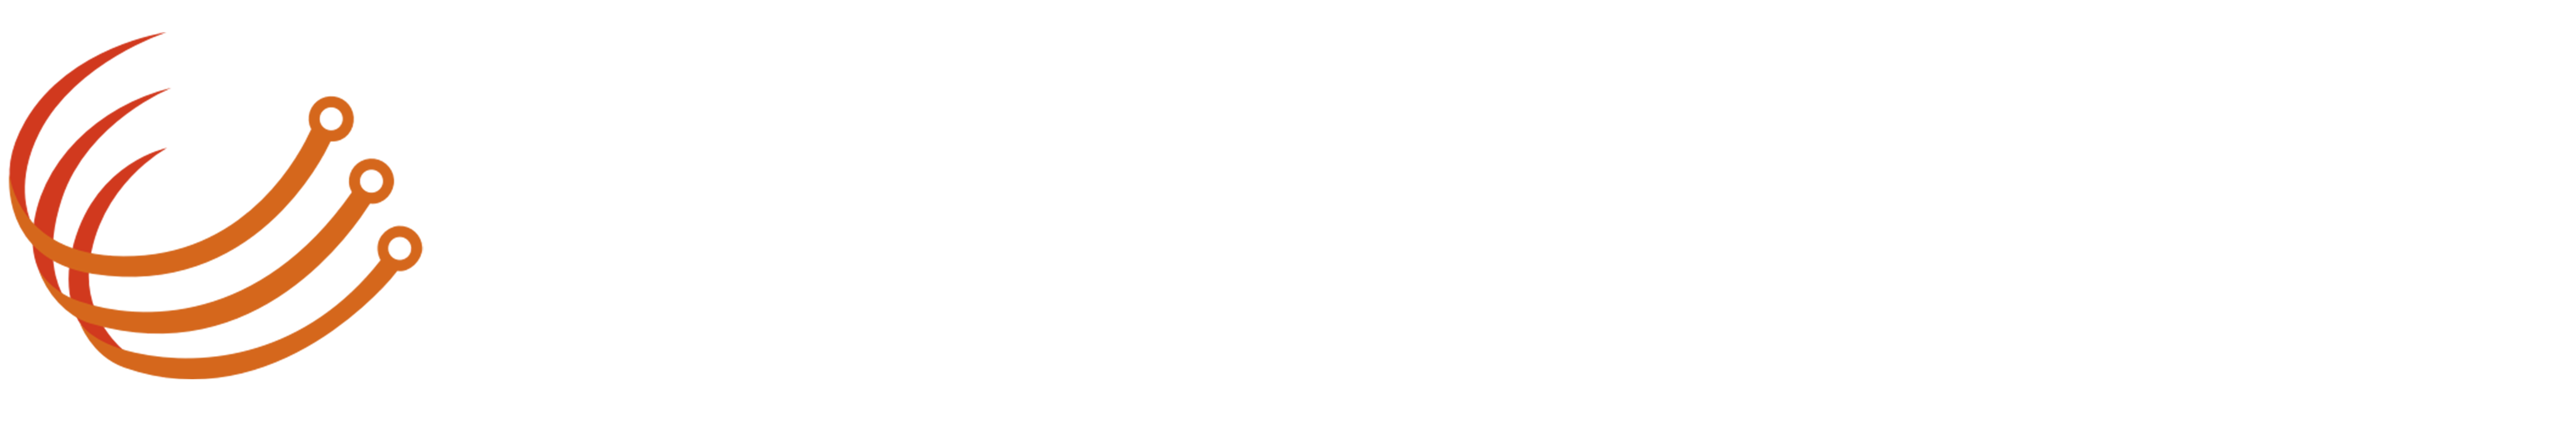 DigitbiteAI logo white